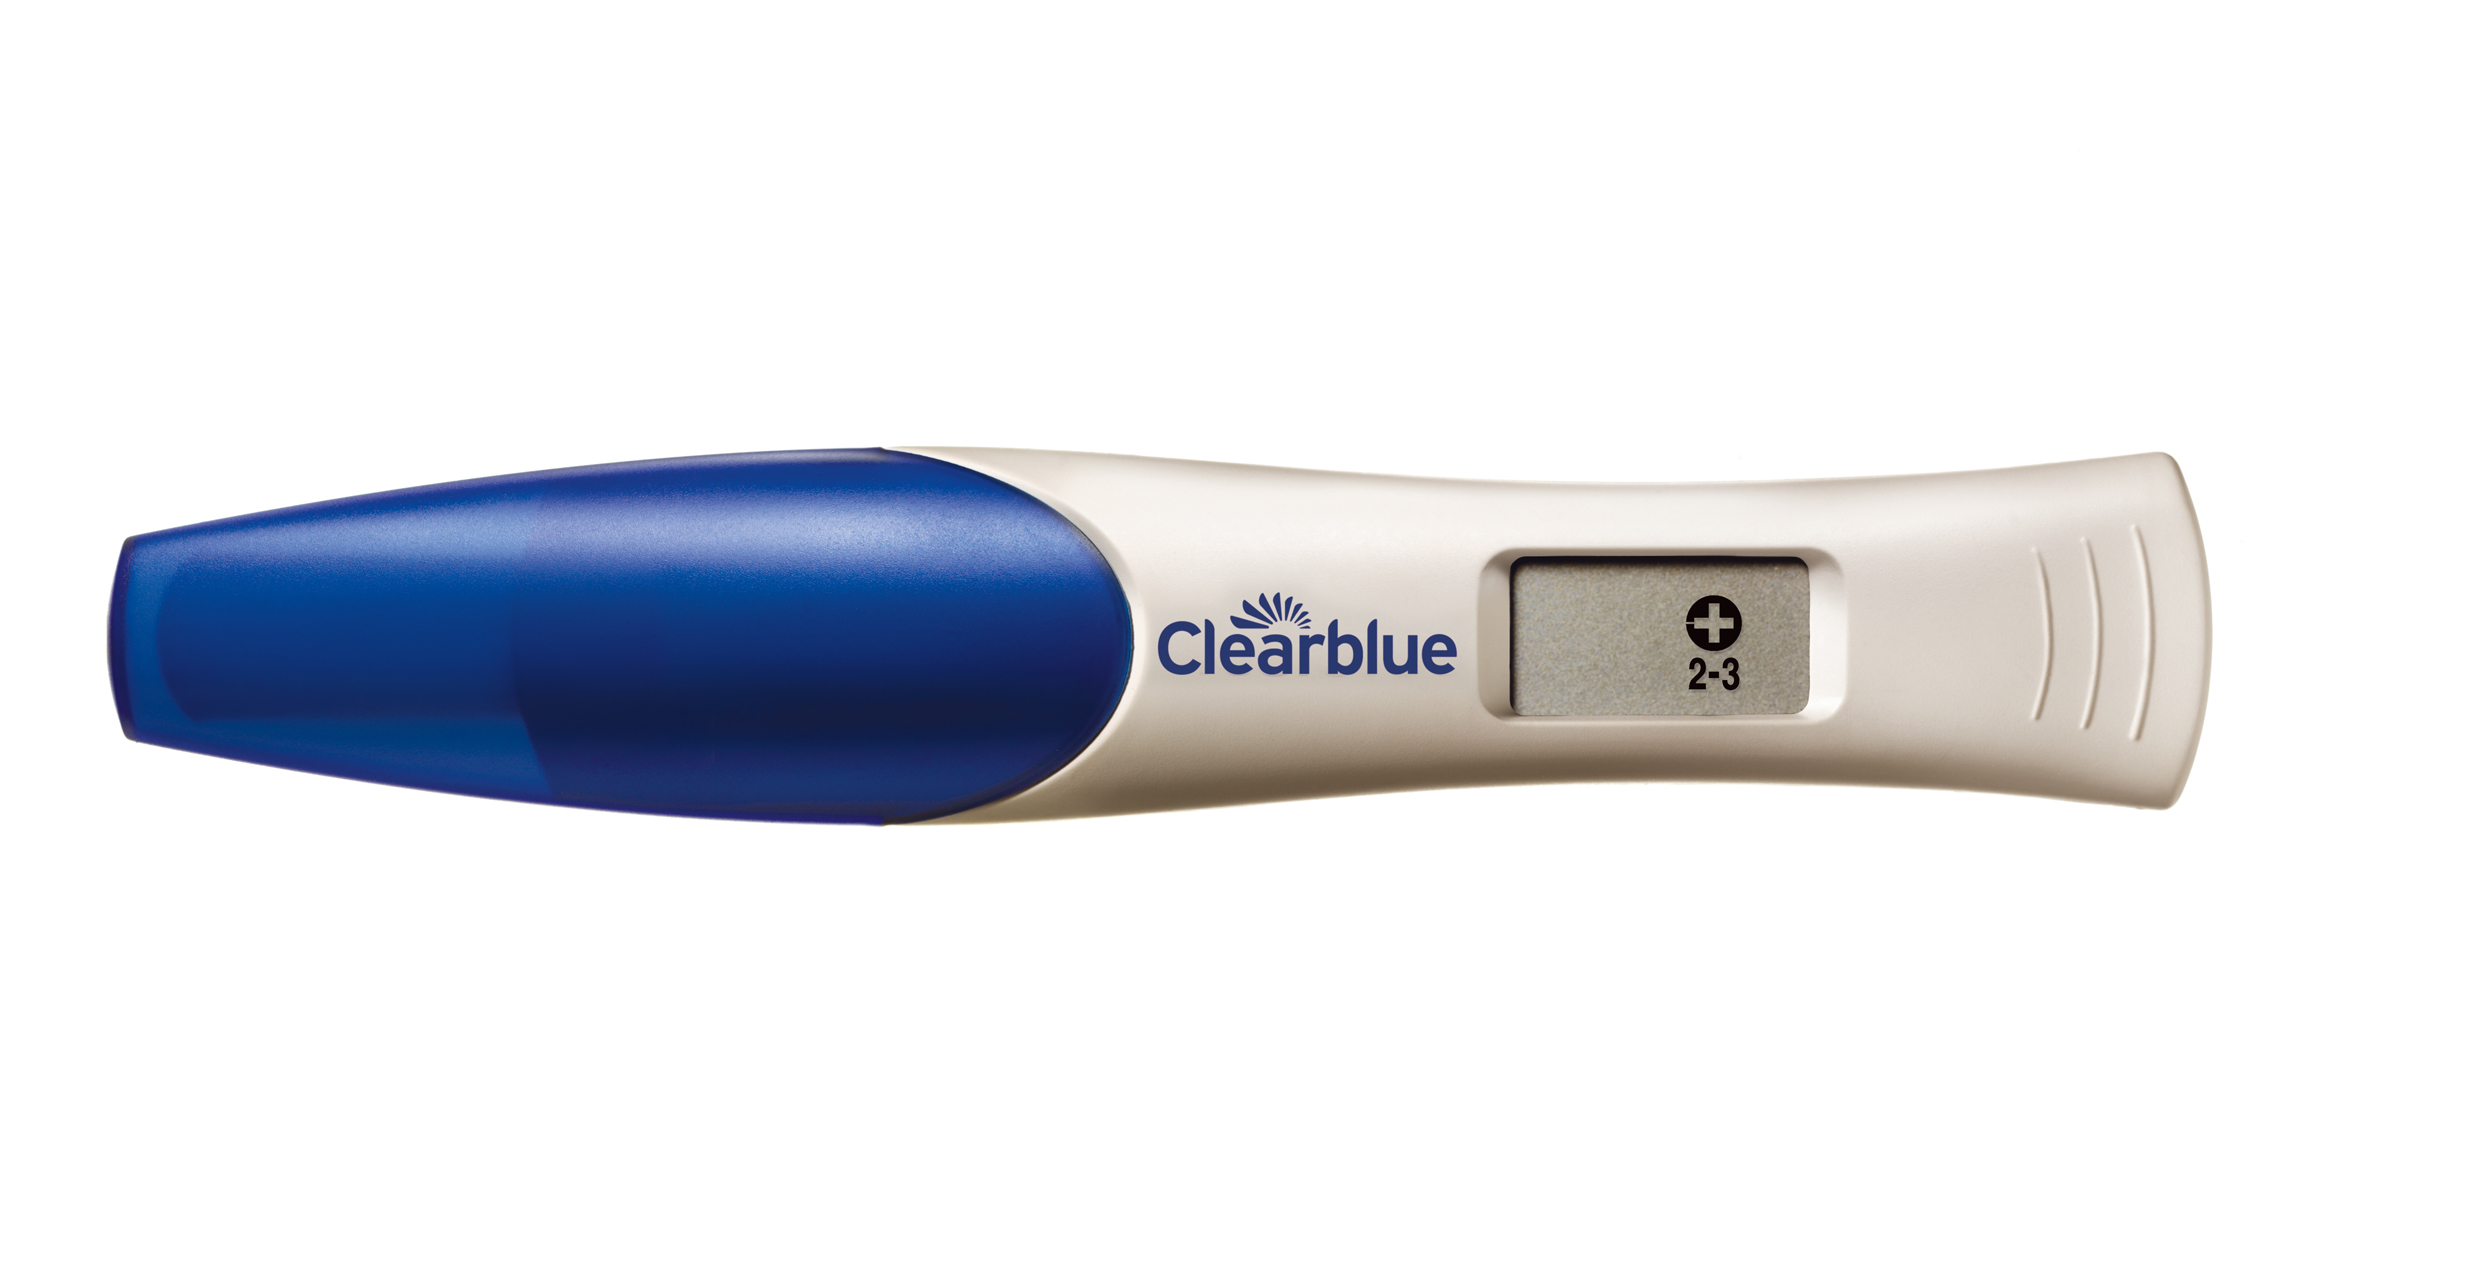 Электронный тест показал 2 3 недели. Электронный тест на беременность Clearblue. Электронный тест на беременность c l. Clearblue тест. Тест клеарблю на беременность электронный.